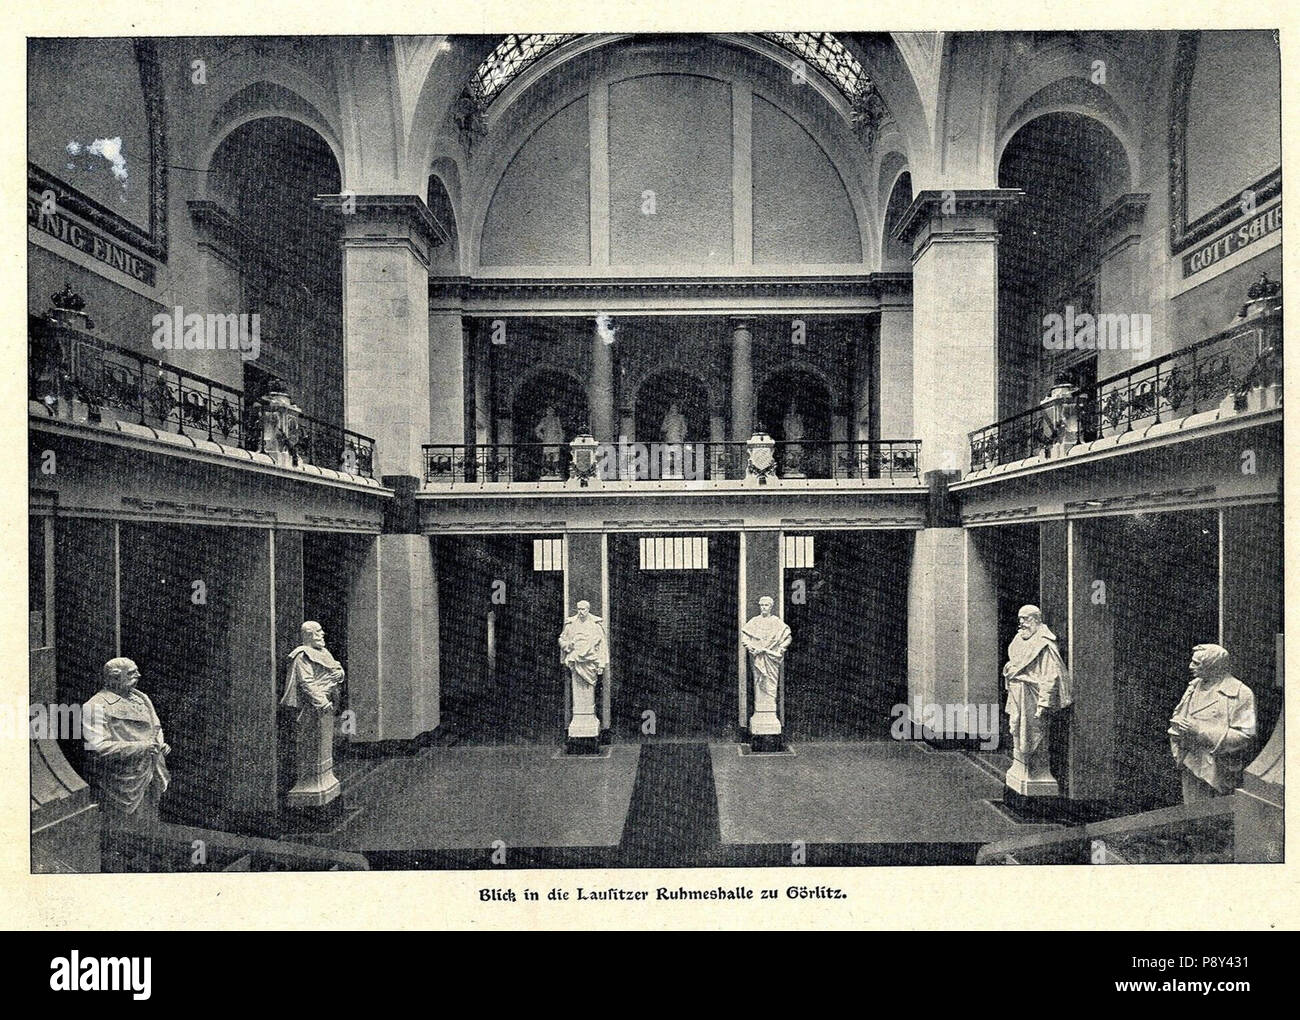 258 Die Lausitzer Ruhmeshalle zu Görlitz, 1902 Stock Photo